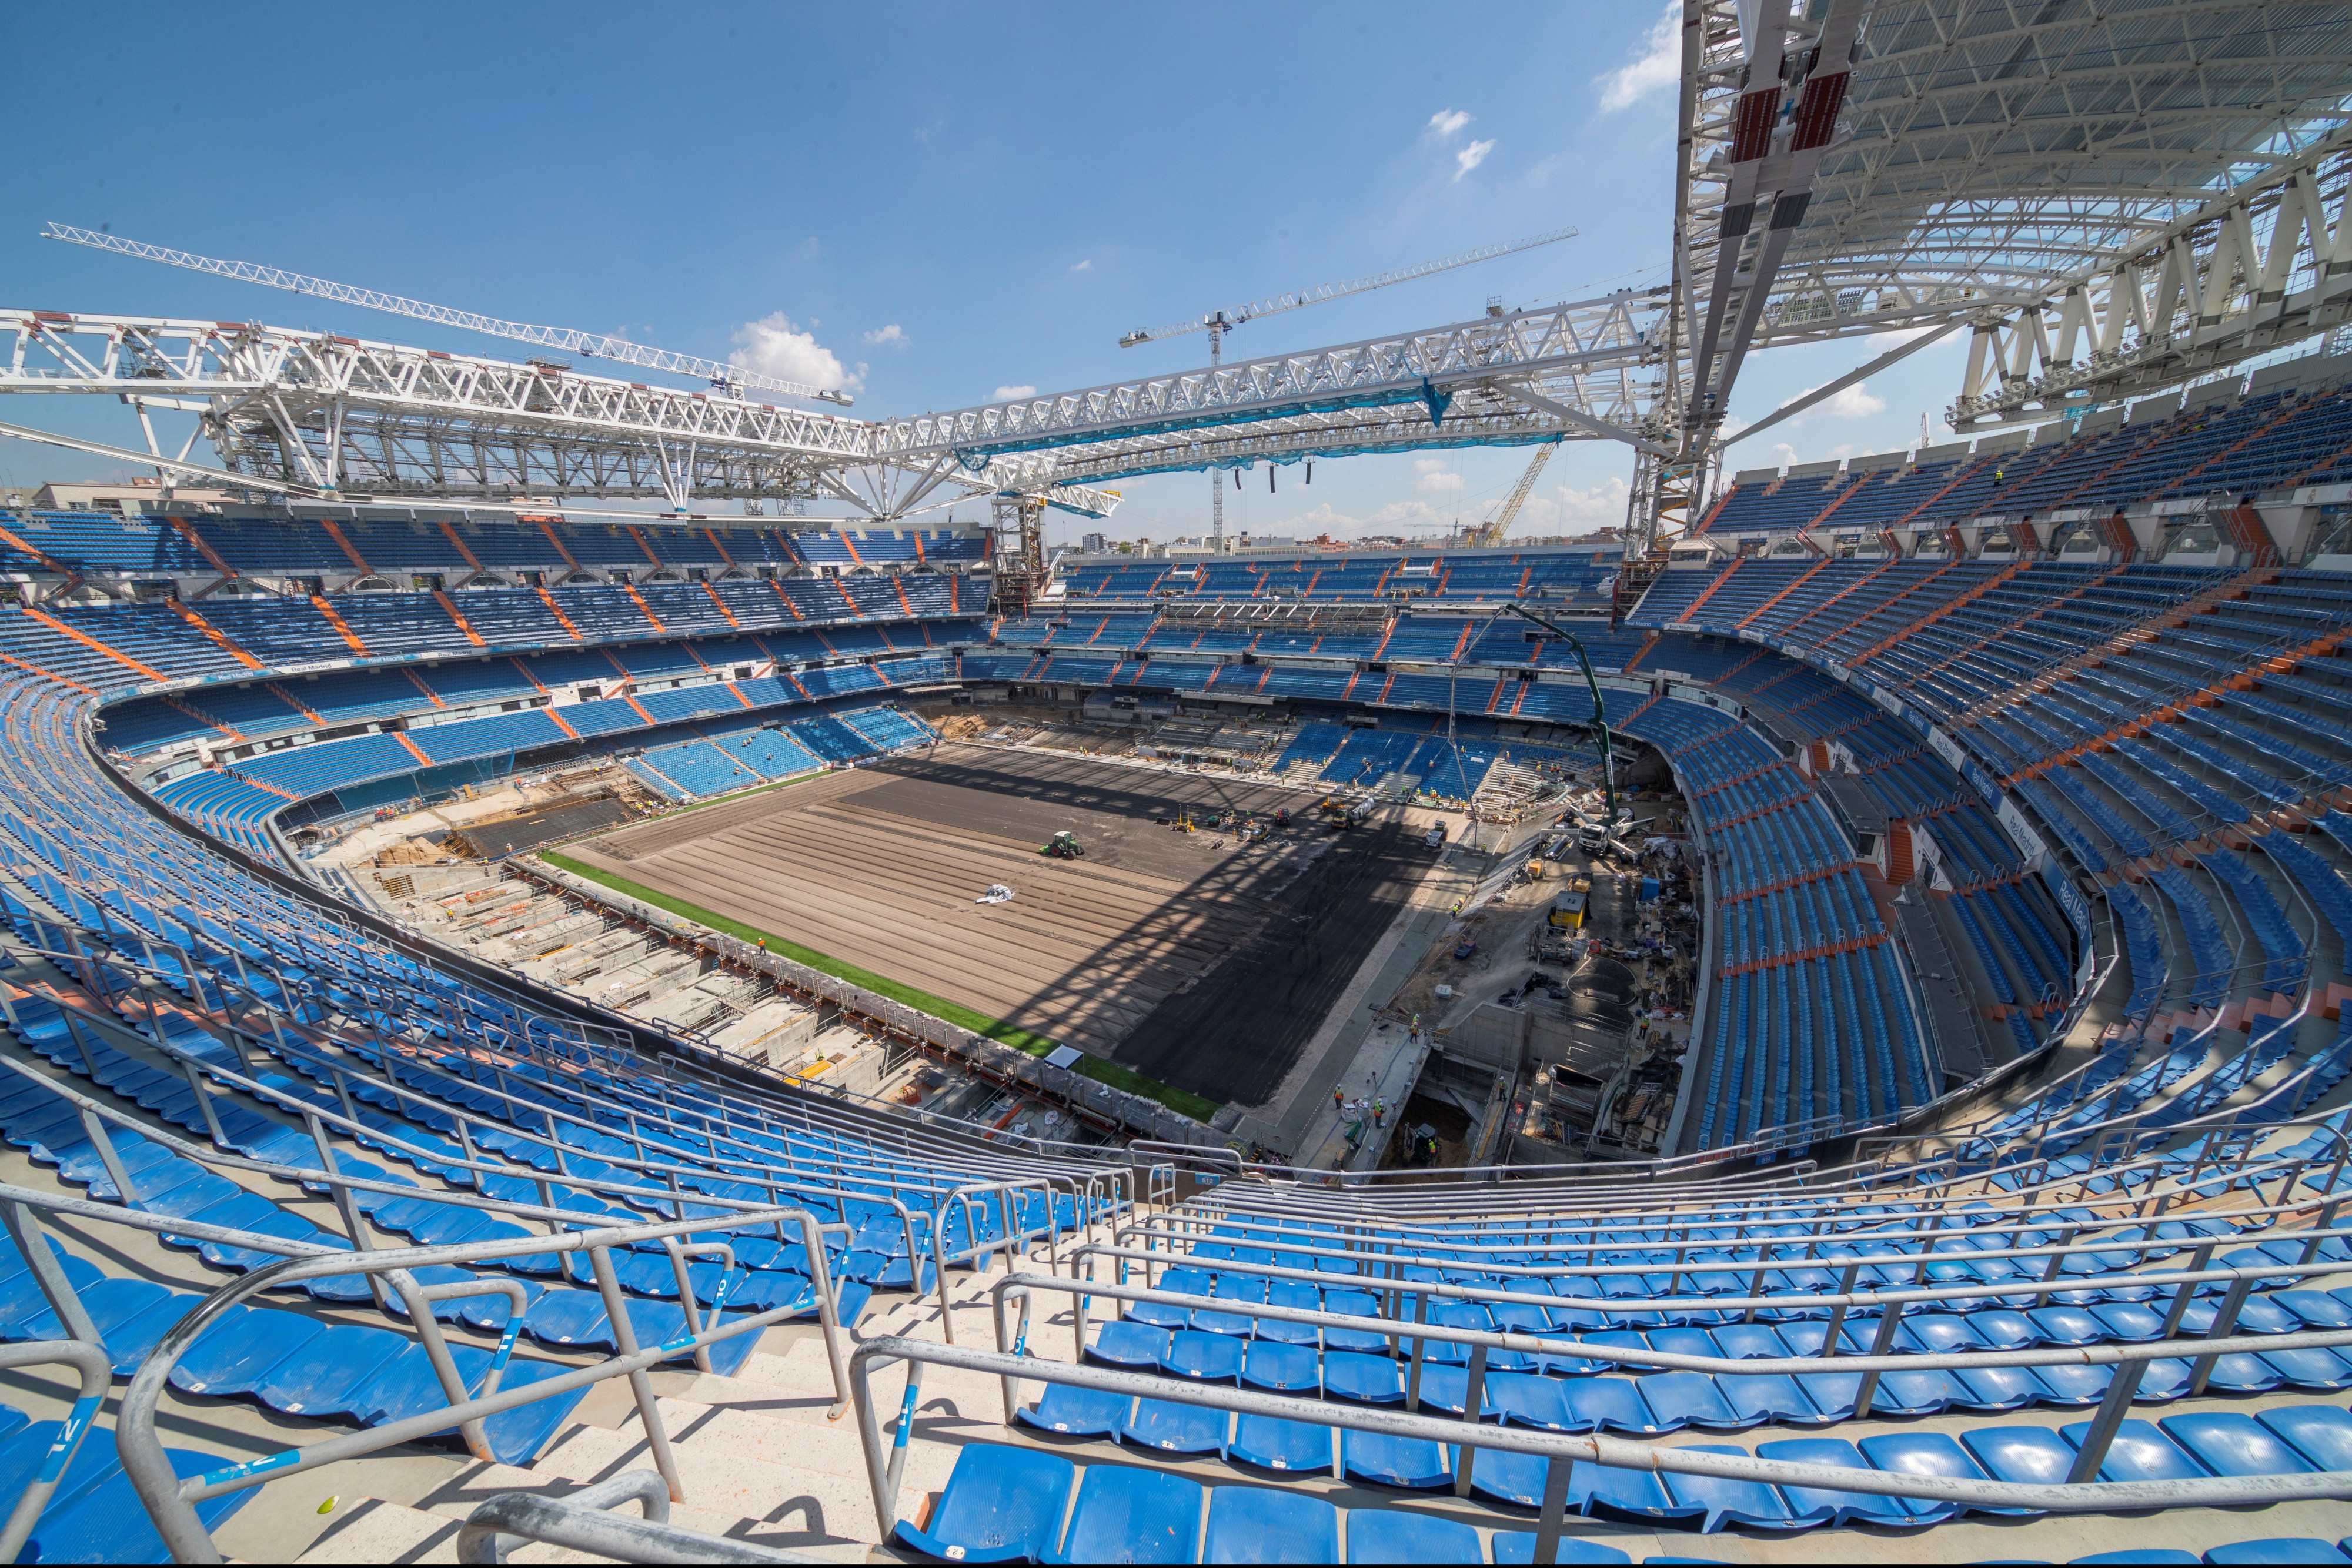 Florentino prepara una inauguración lujosa del nuevo Bernabéu / EFE